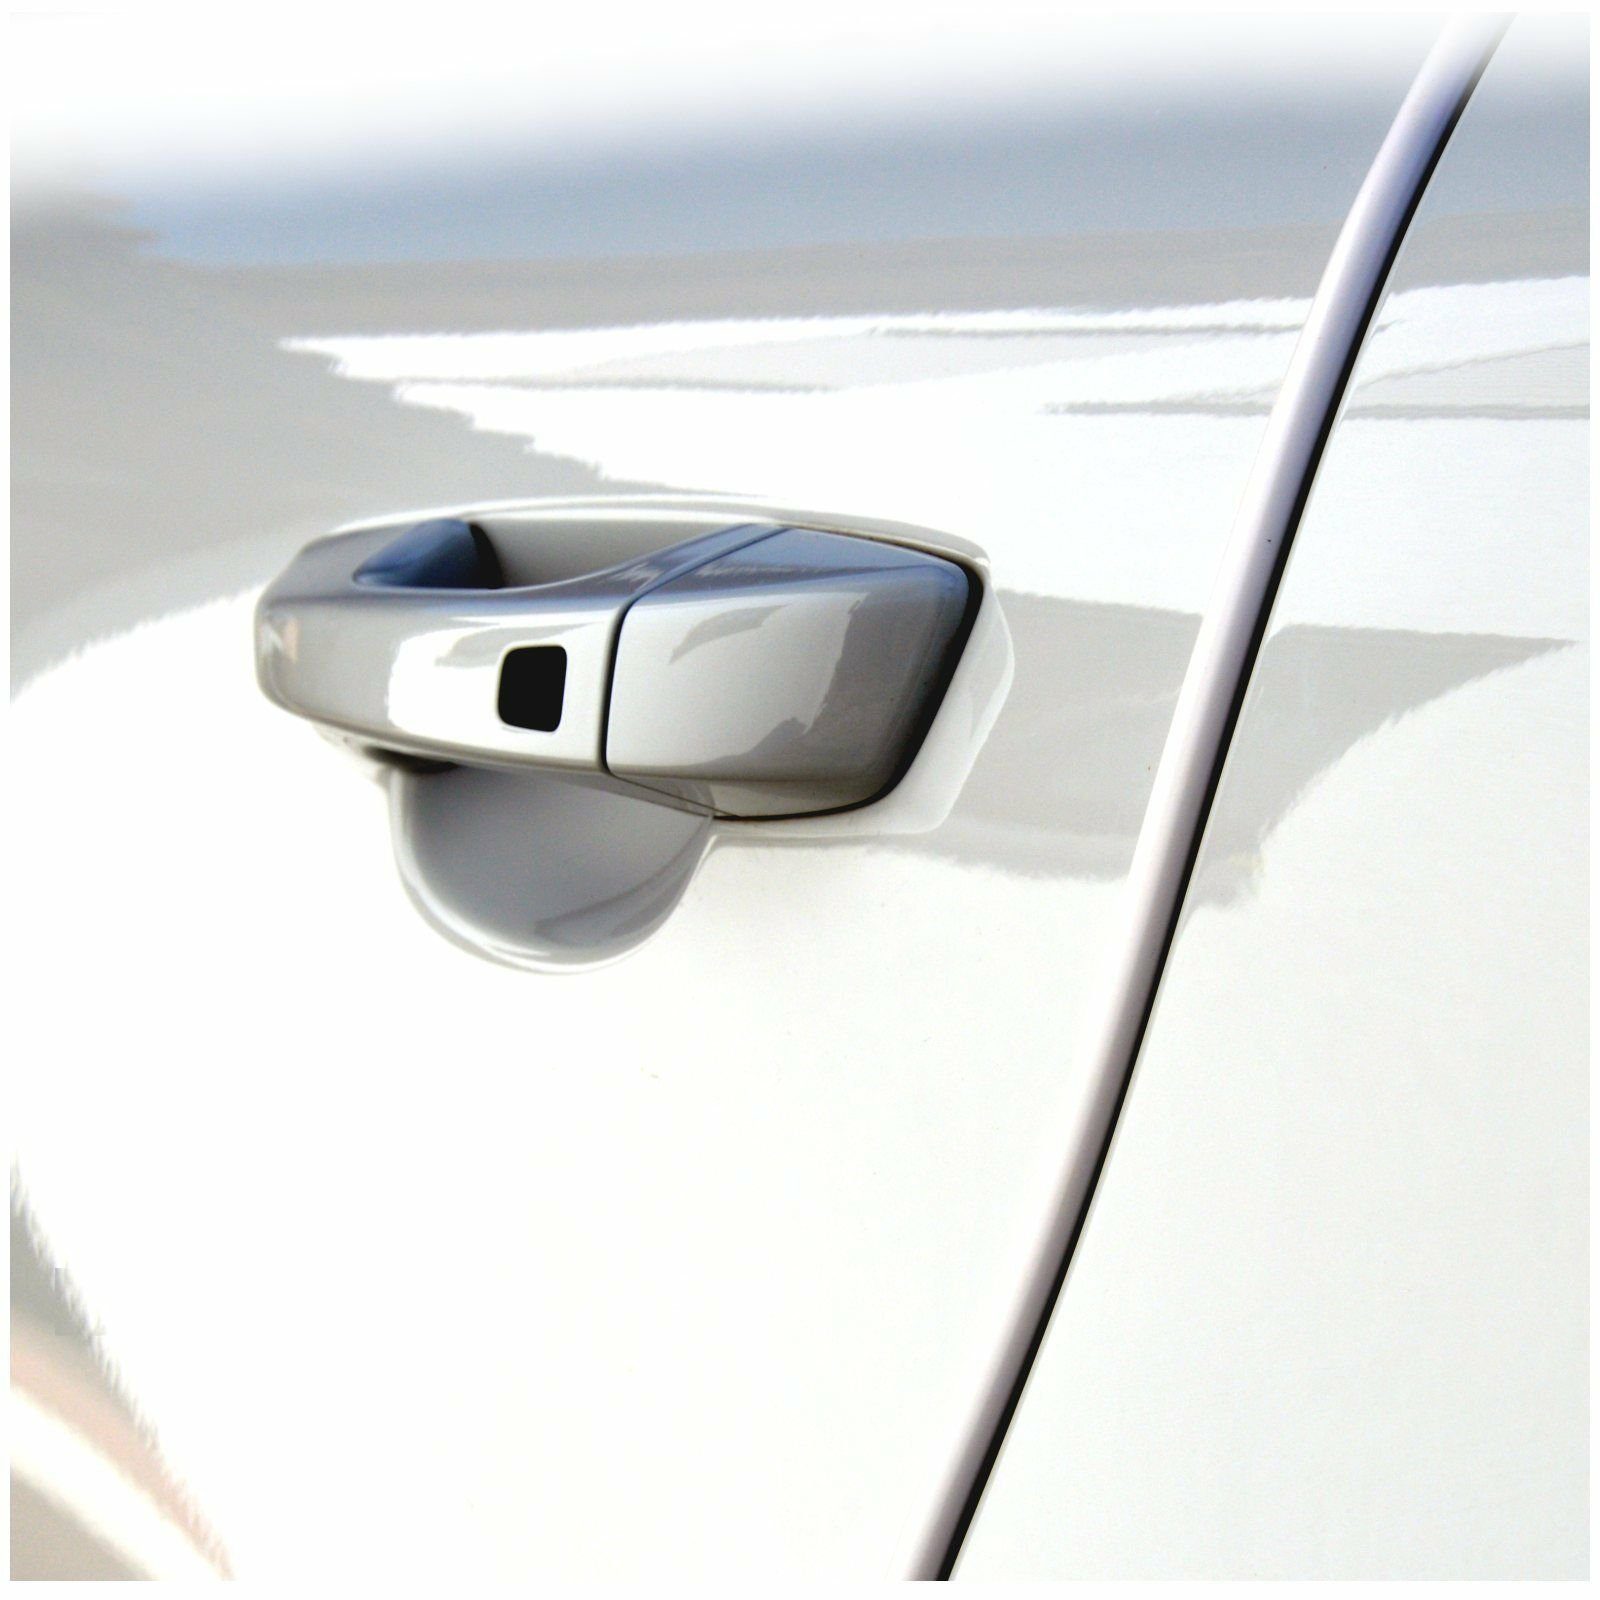 Türschutz Kantenschutz Auto Schutzleiste 2 x 62 cm U-Profil